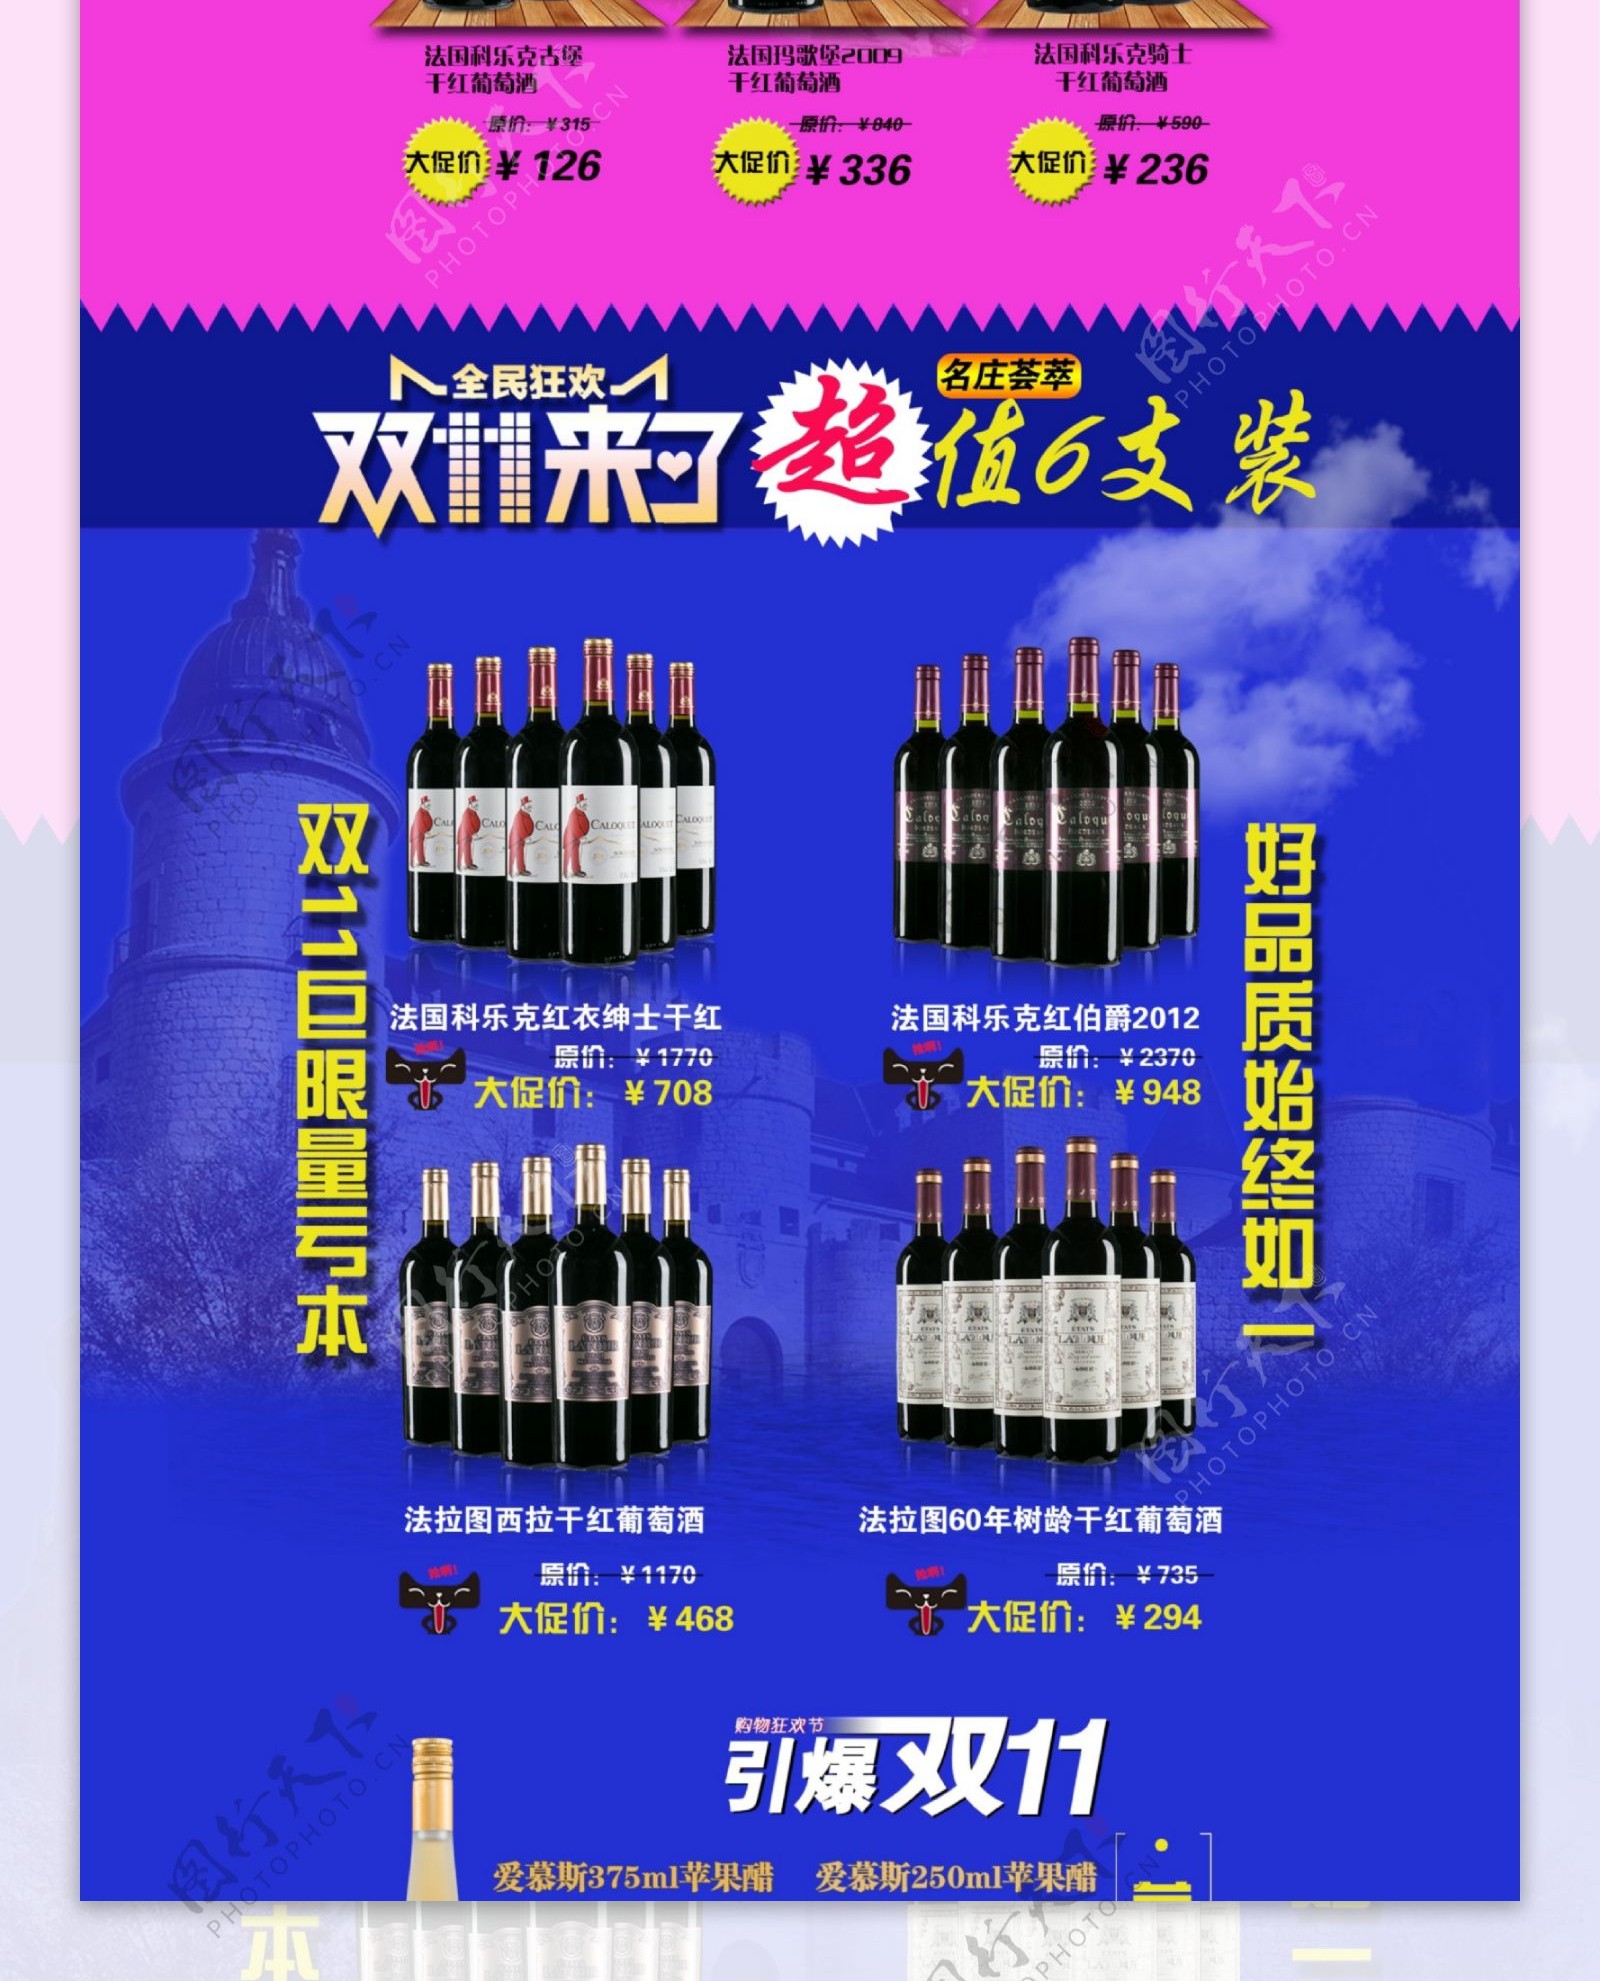 淘宝红酒双11促销页面设计PSD素材